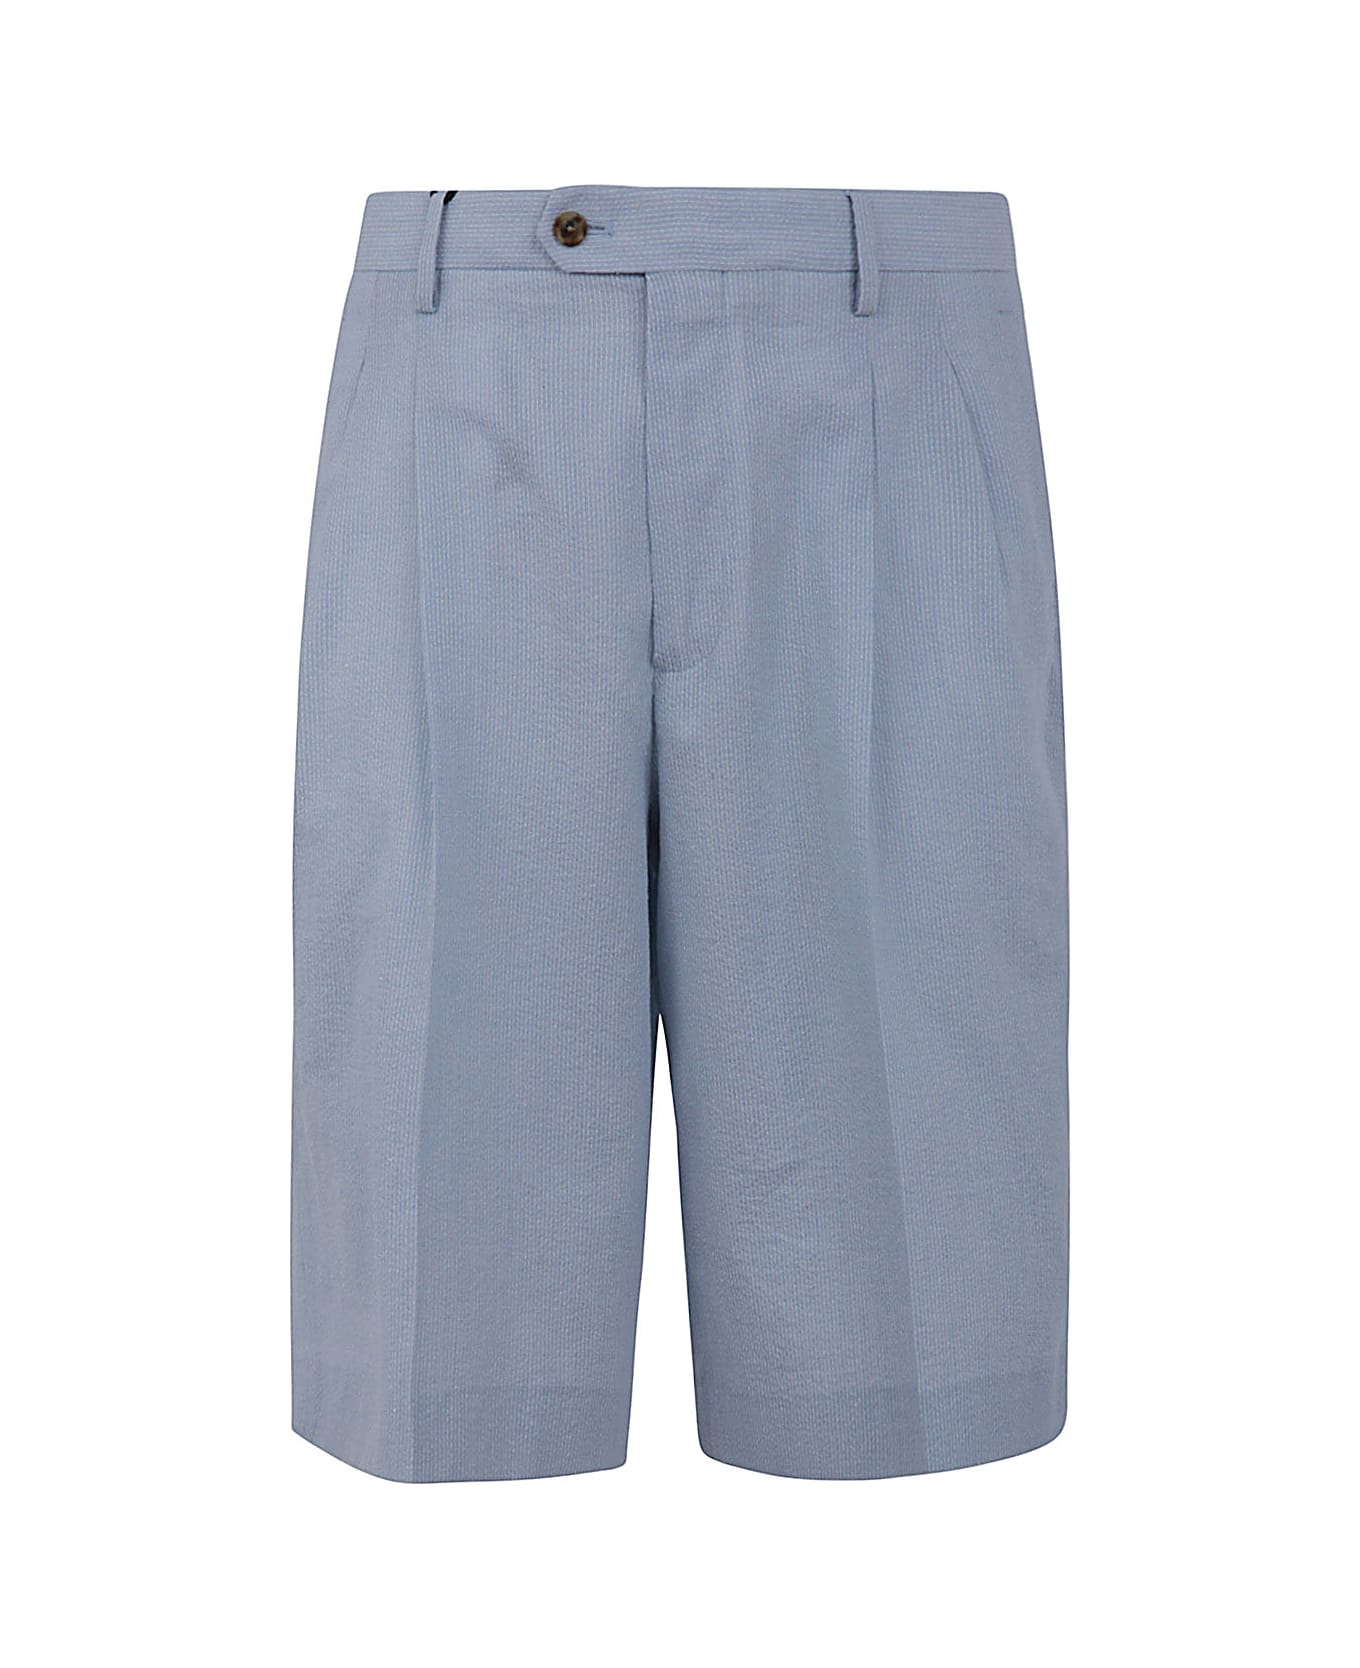 Lardini Shorts - Light Blue